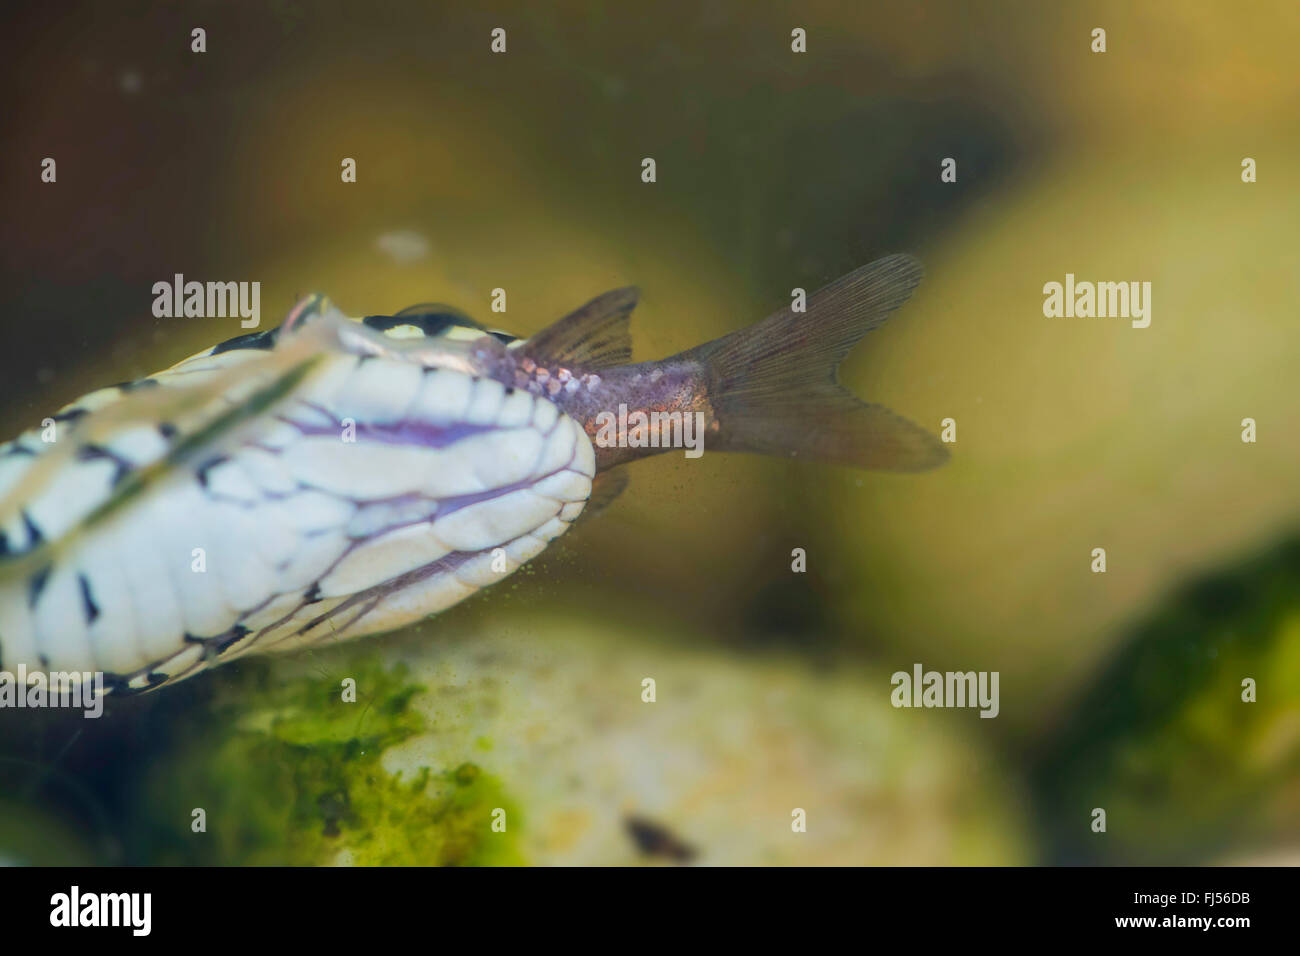 Serpente D'acqua Dolce Immagini e Fotos Stock - Alamy